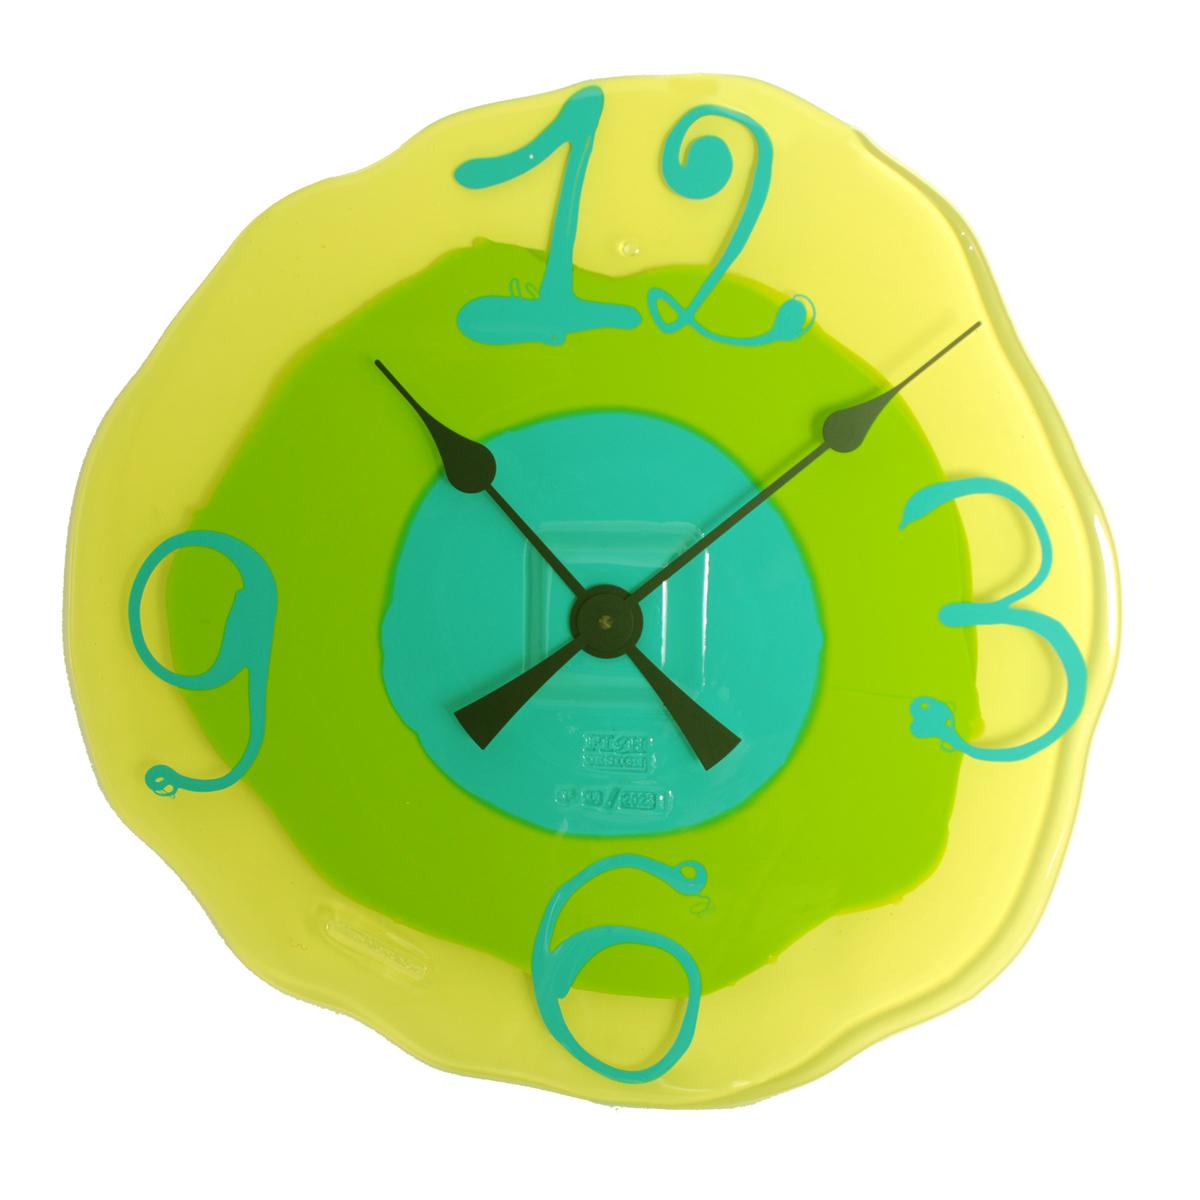 Horloge Watch me - jaune clair, citron vert mat, turquoise mat.
Horloge en résine dure conçue par Gaetano Pesce pour la collection Fish Design.

Informations complémentaires : 
Matériau : Résine dure
Couleur : jaune clair, citron vert mat, turquoise